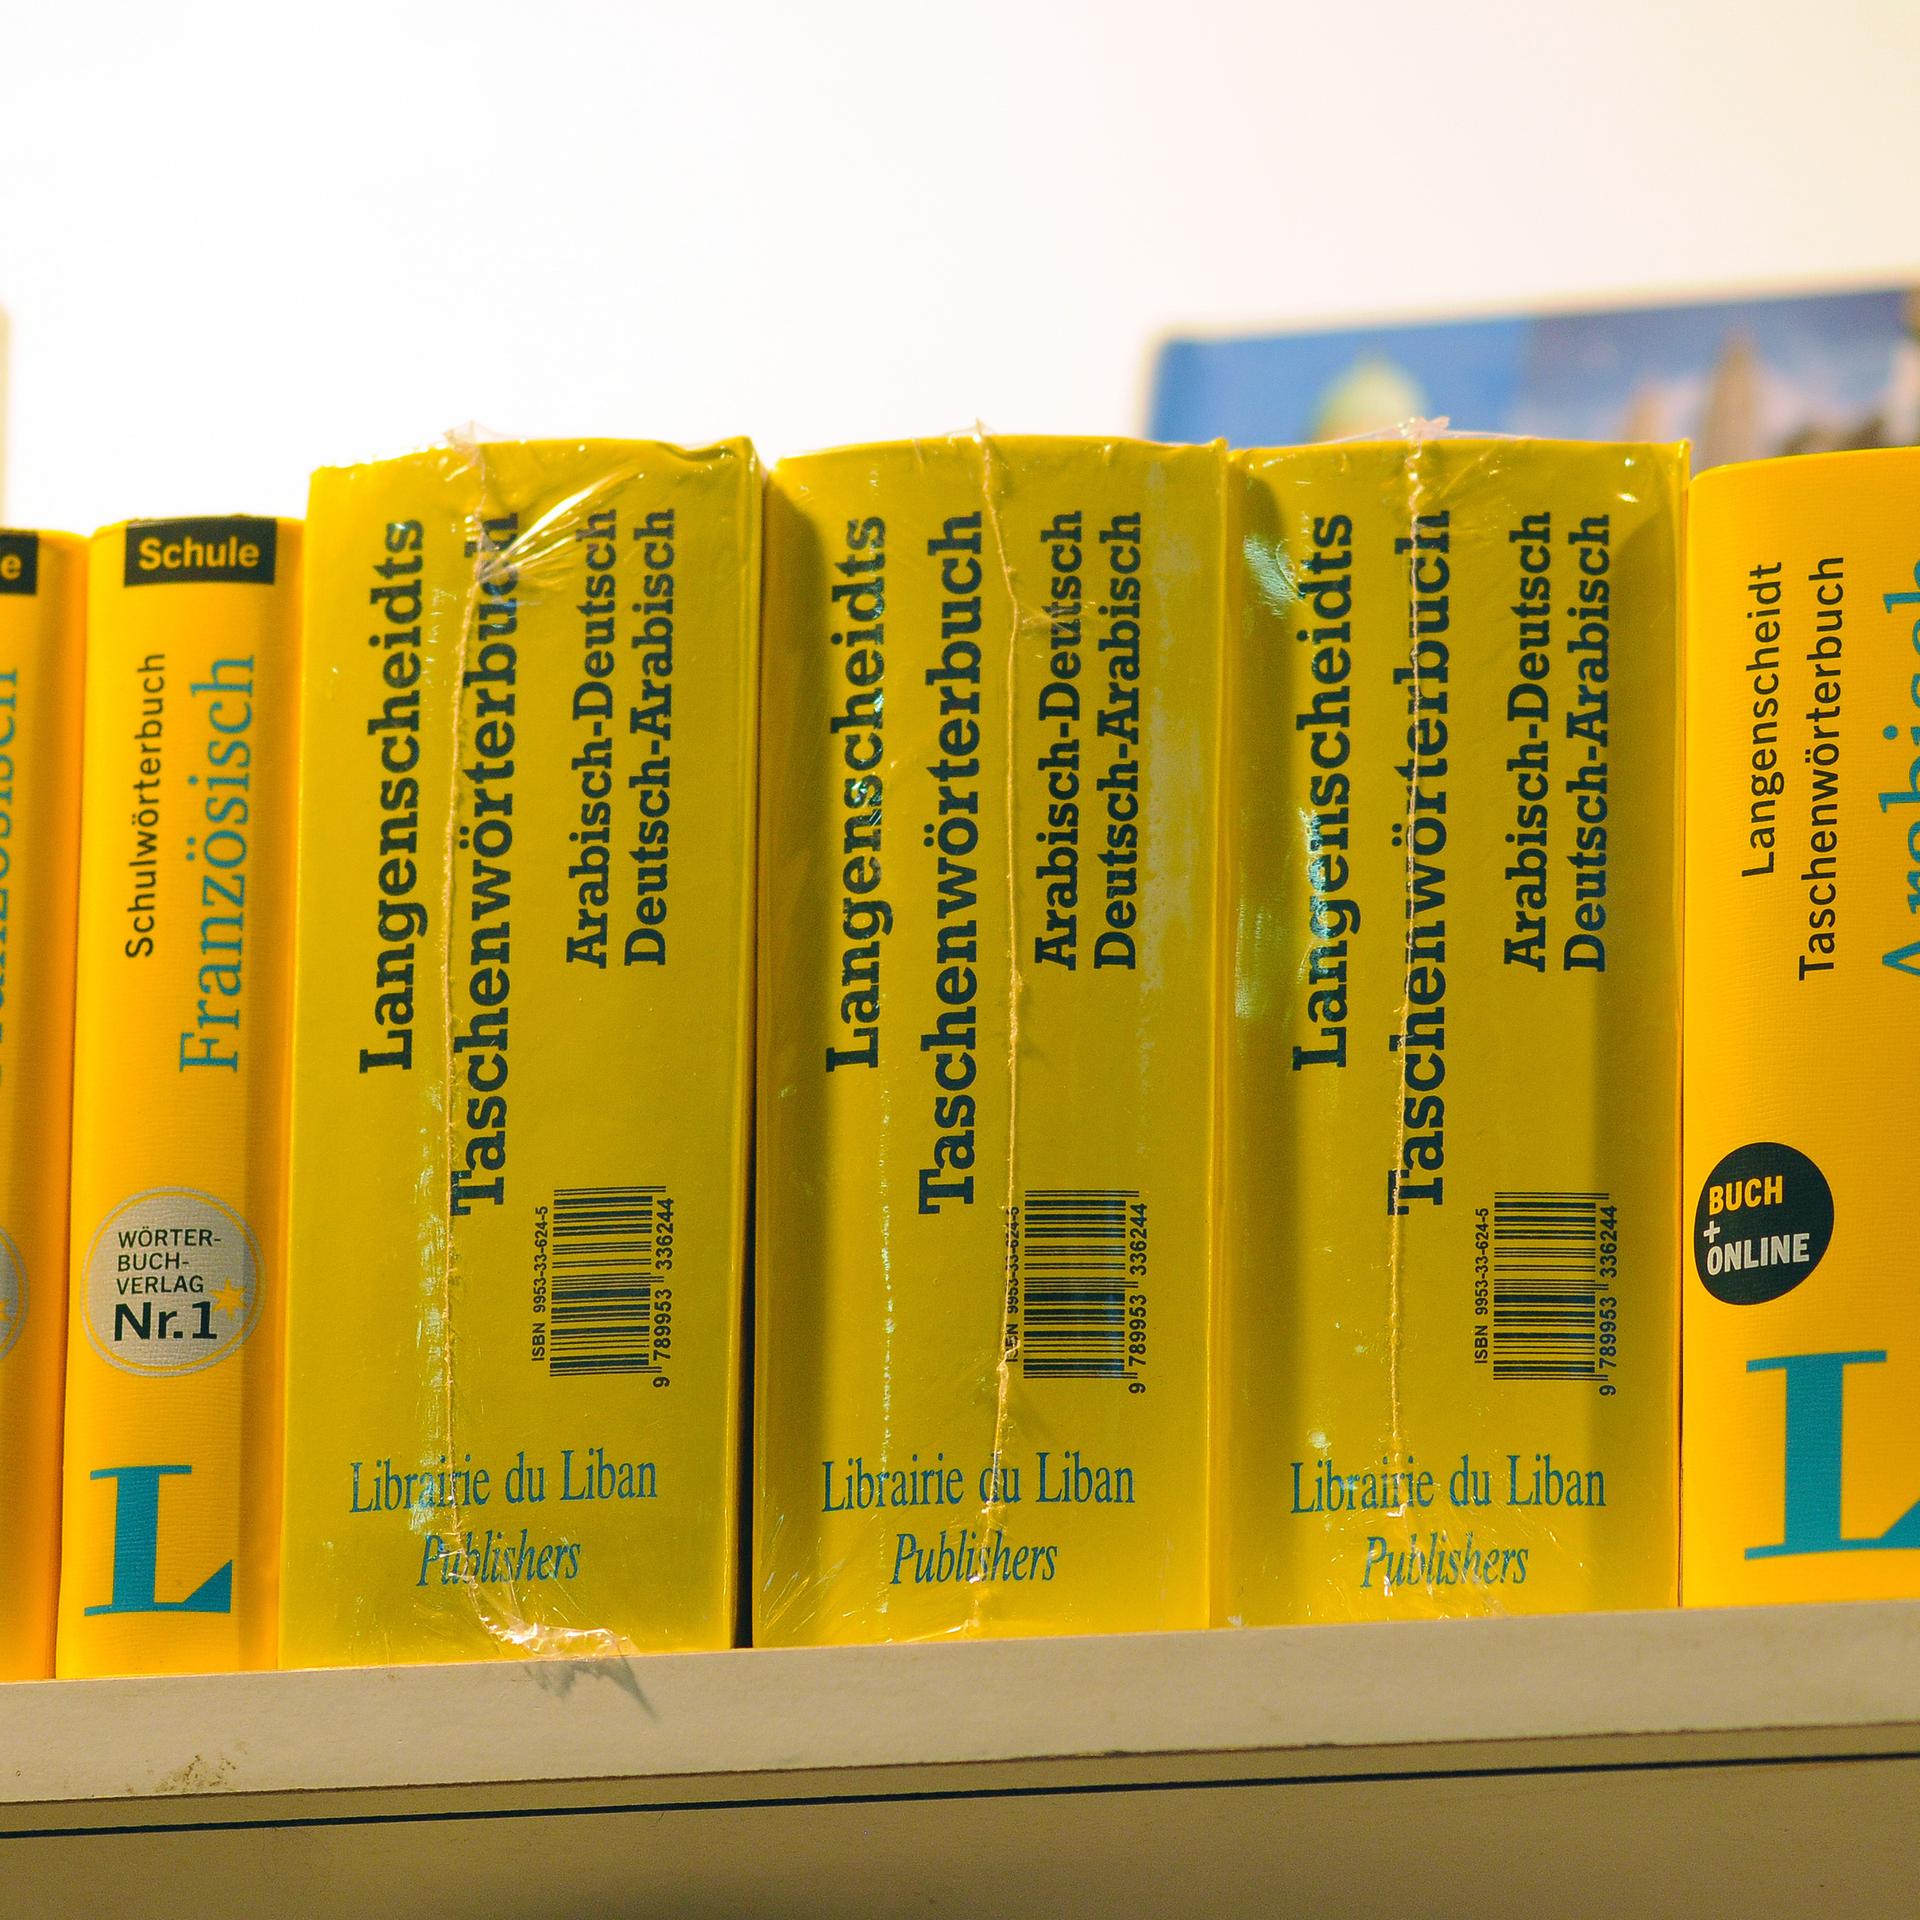 Deutsch-arabische Lexika, teils als Lizenzausgabe des libanesischen Verlagshauses Librairie du Liban auf dem Stand eines Buchhändlers auf der Internationalen Buchmesse in Kairo.